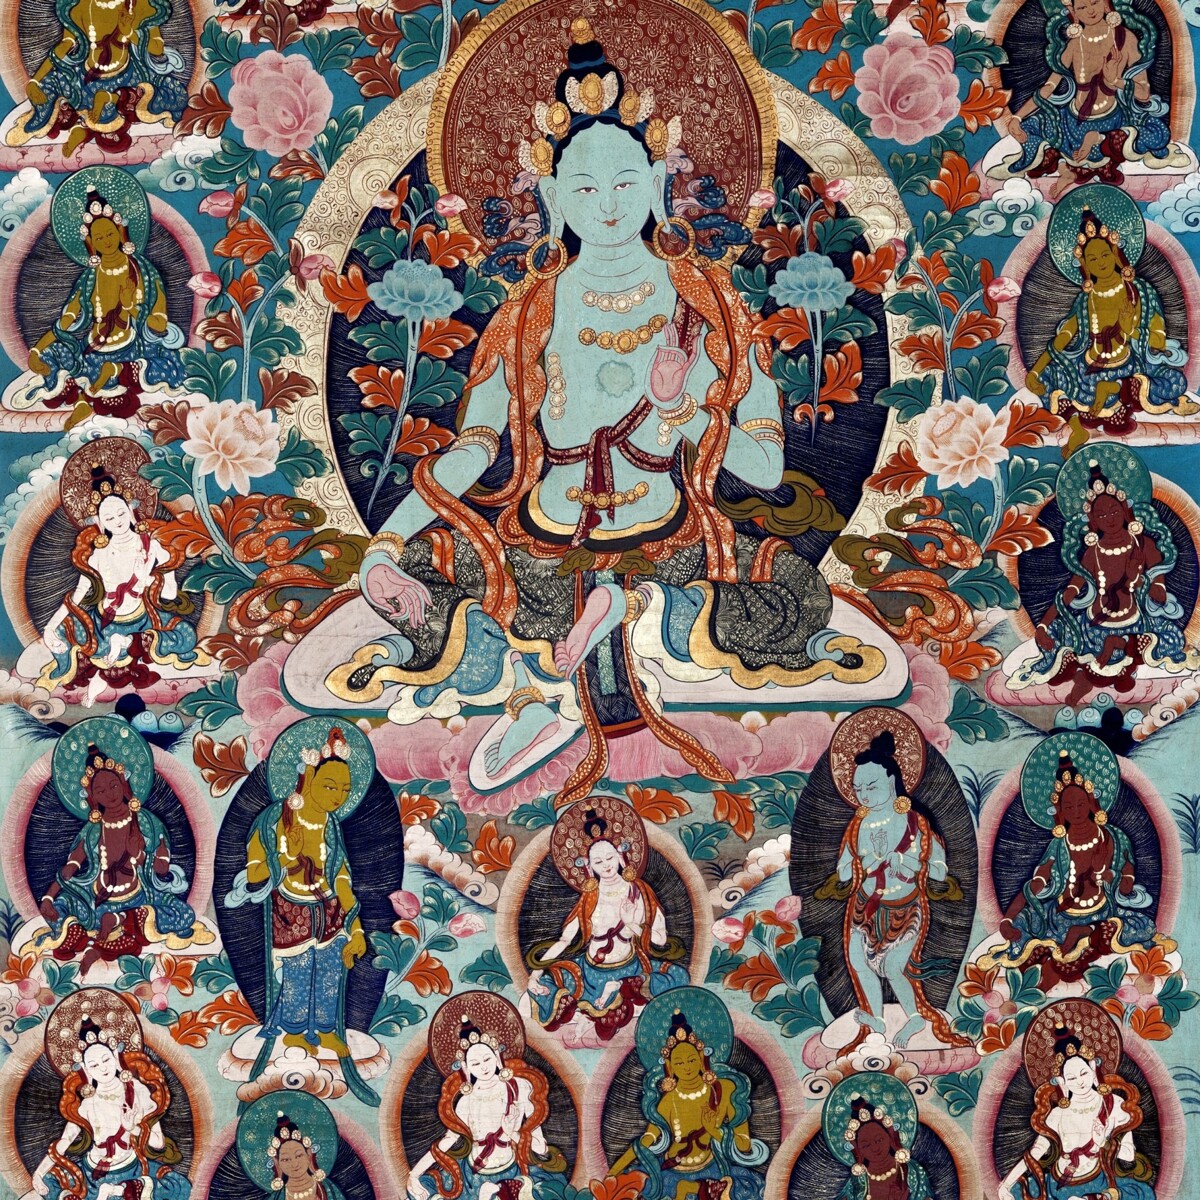 Mandaly ve větru: Umění tibetského buddhismu ze sbírky Národního muzea - Náprstkova muzea